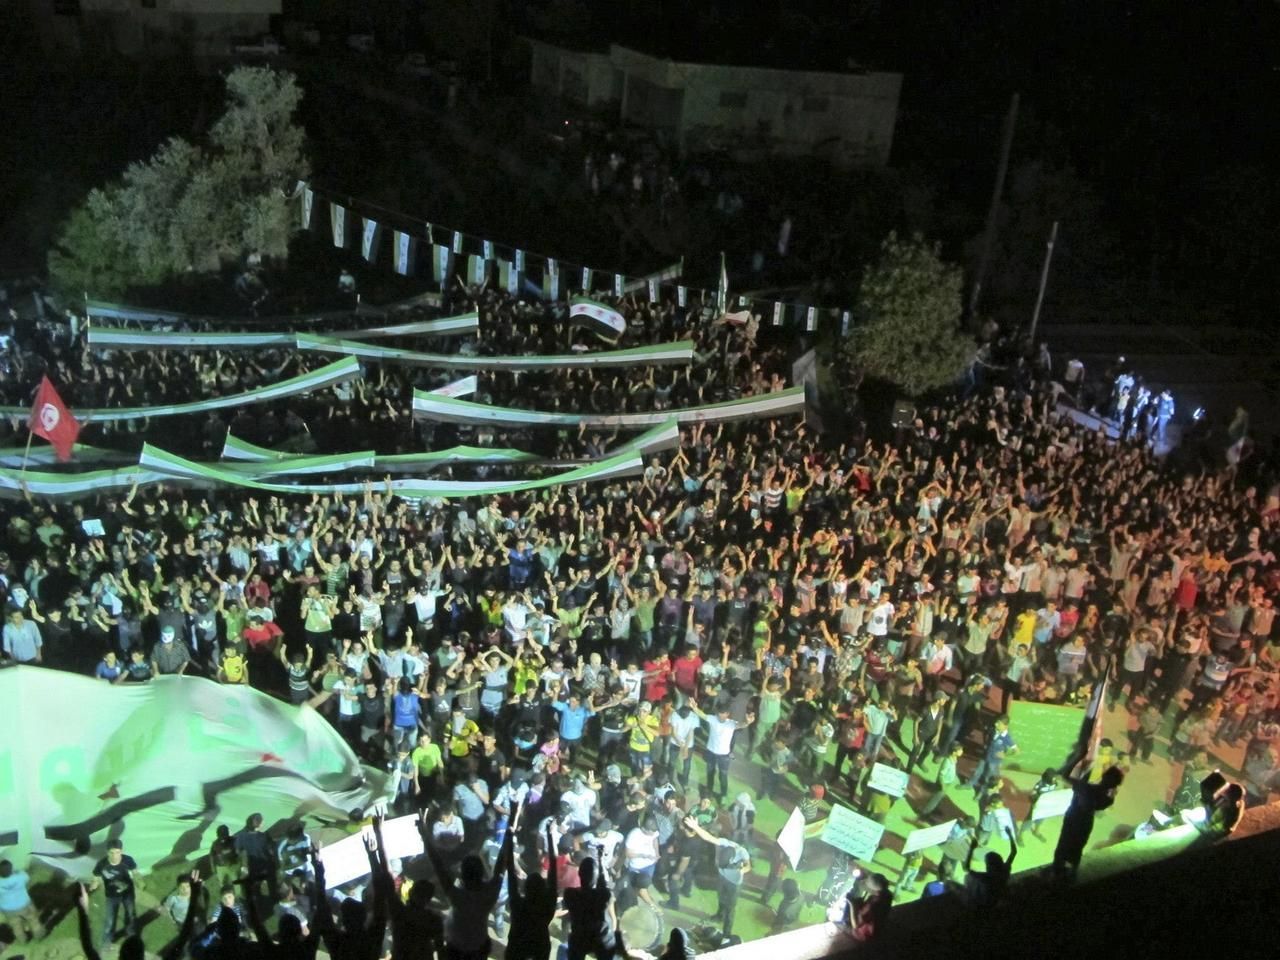 Sýrie - demonstrace proti Bašáru Asadovi